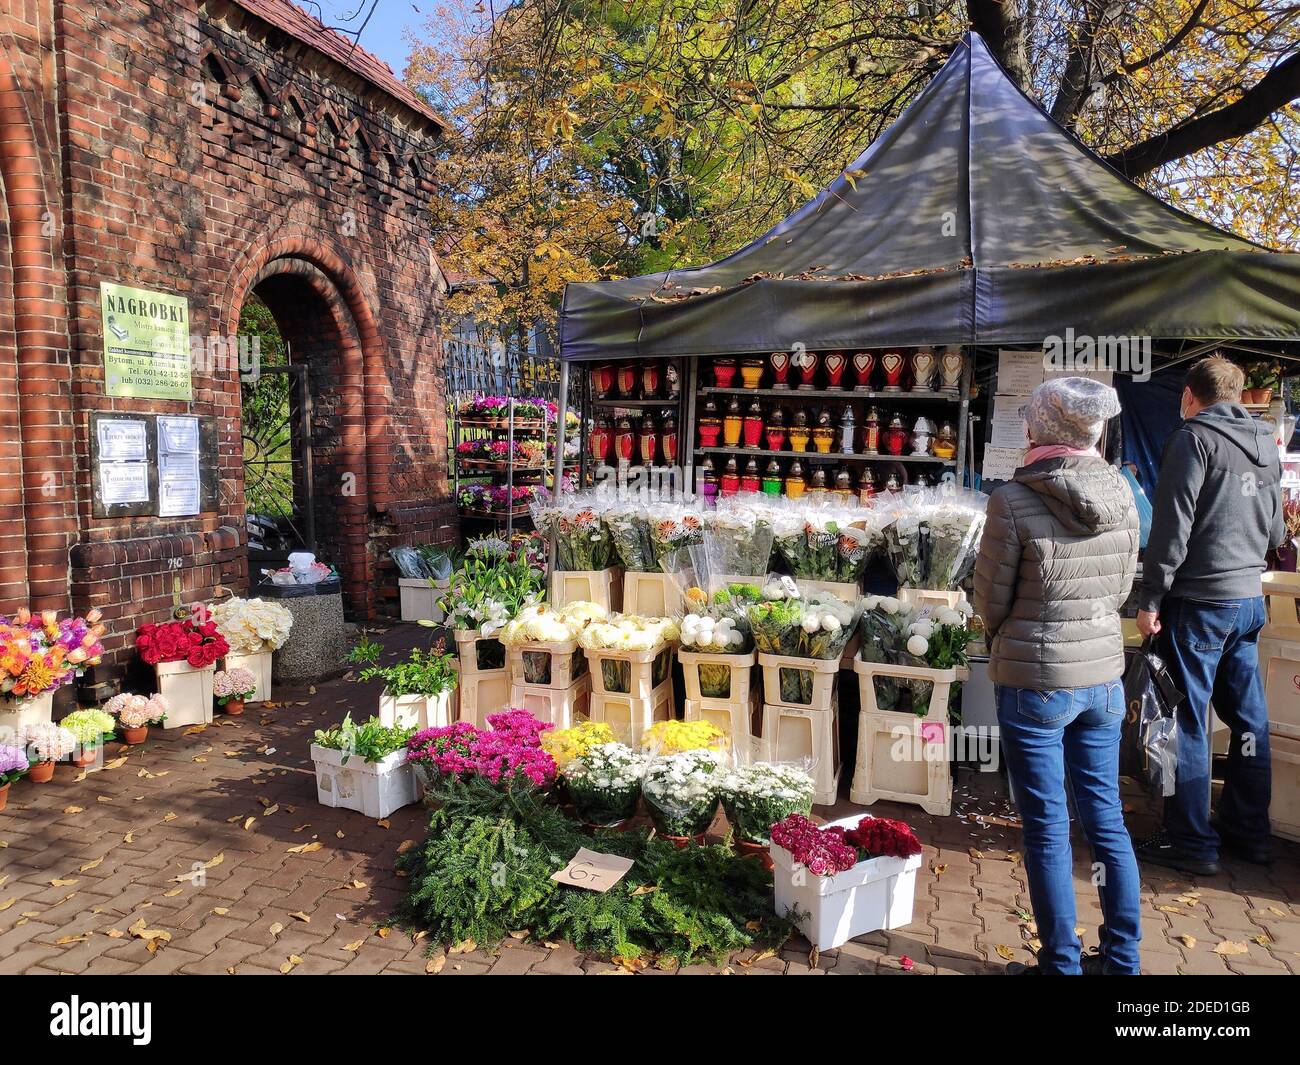 BYTOM, POLEN - 25. OKTOBER 2020: In der Woche vor Allerheiligen (Wszystkich Swietych) auf einem Friedhof in Polen einkaufen. Stockfoto